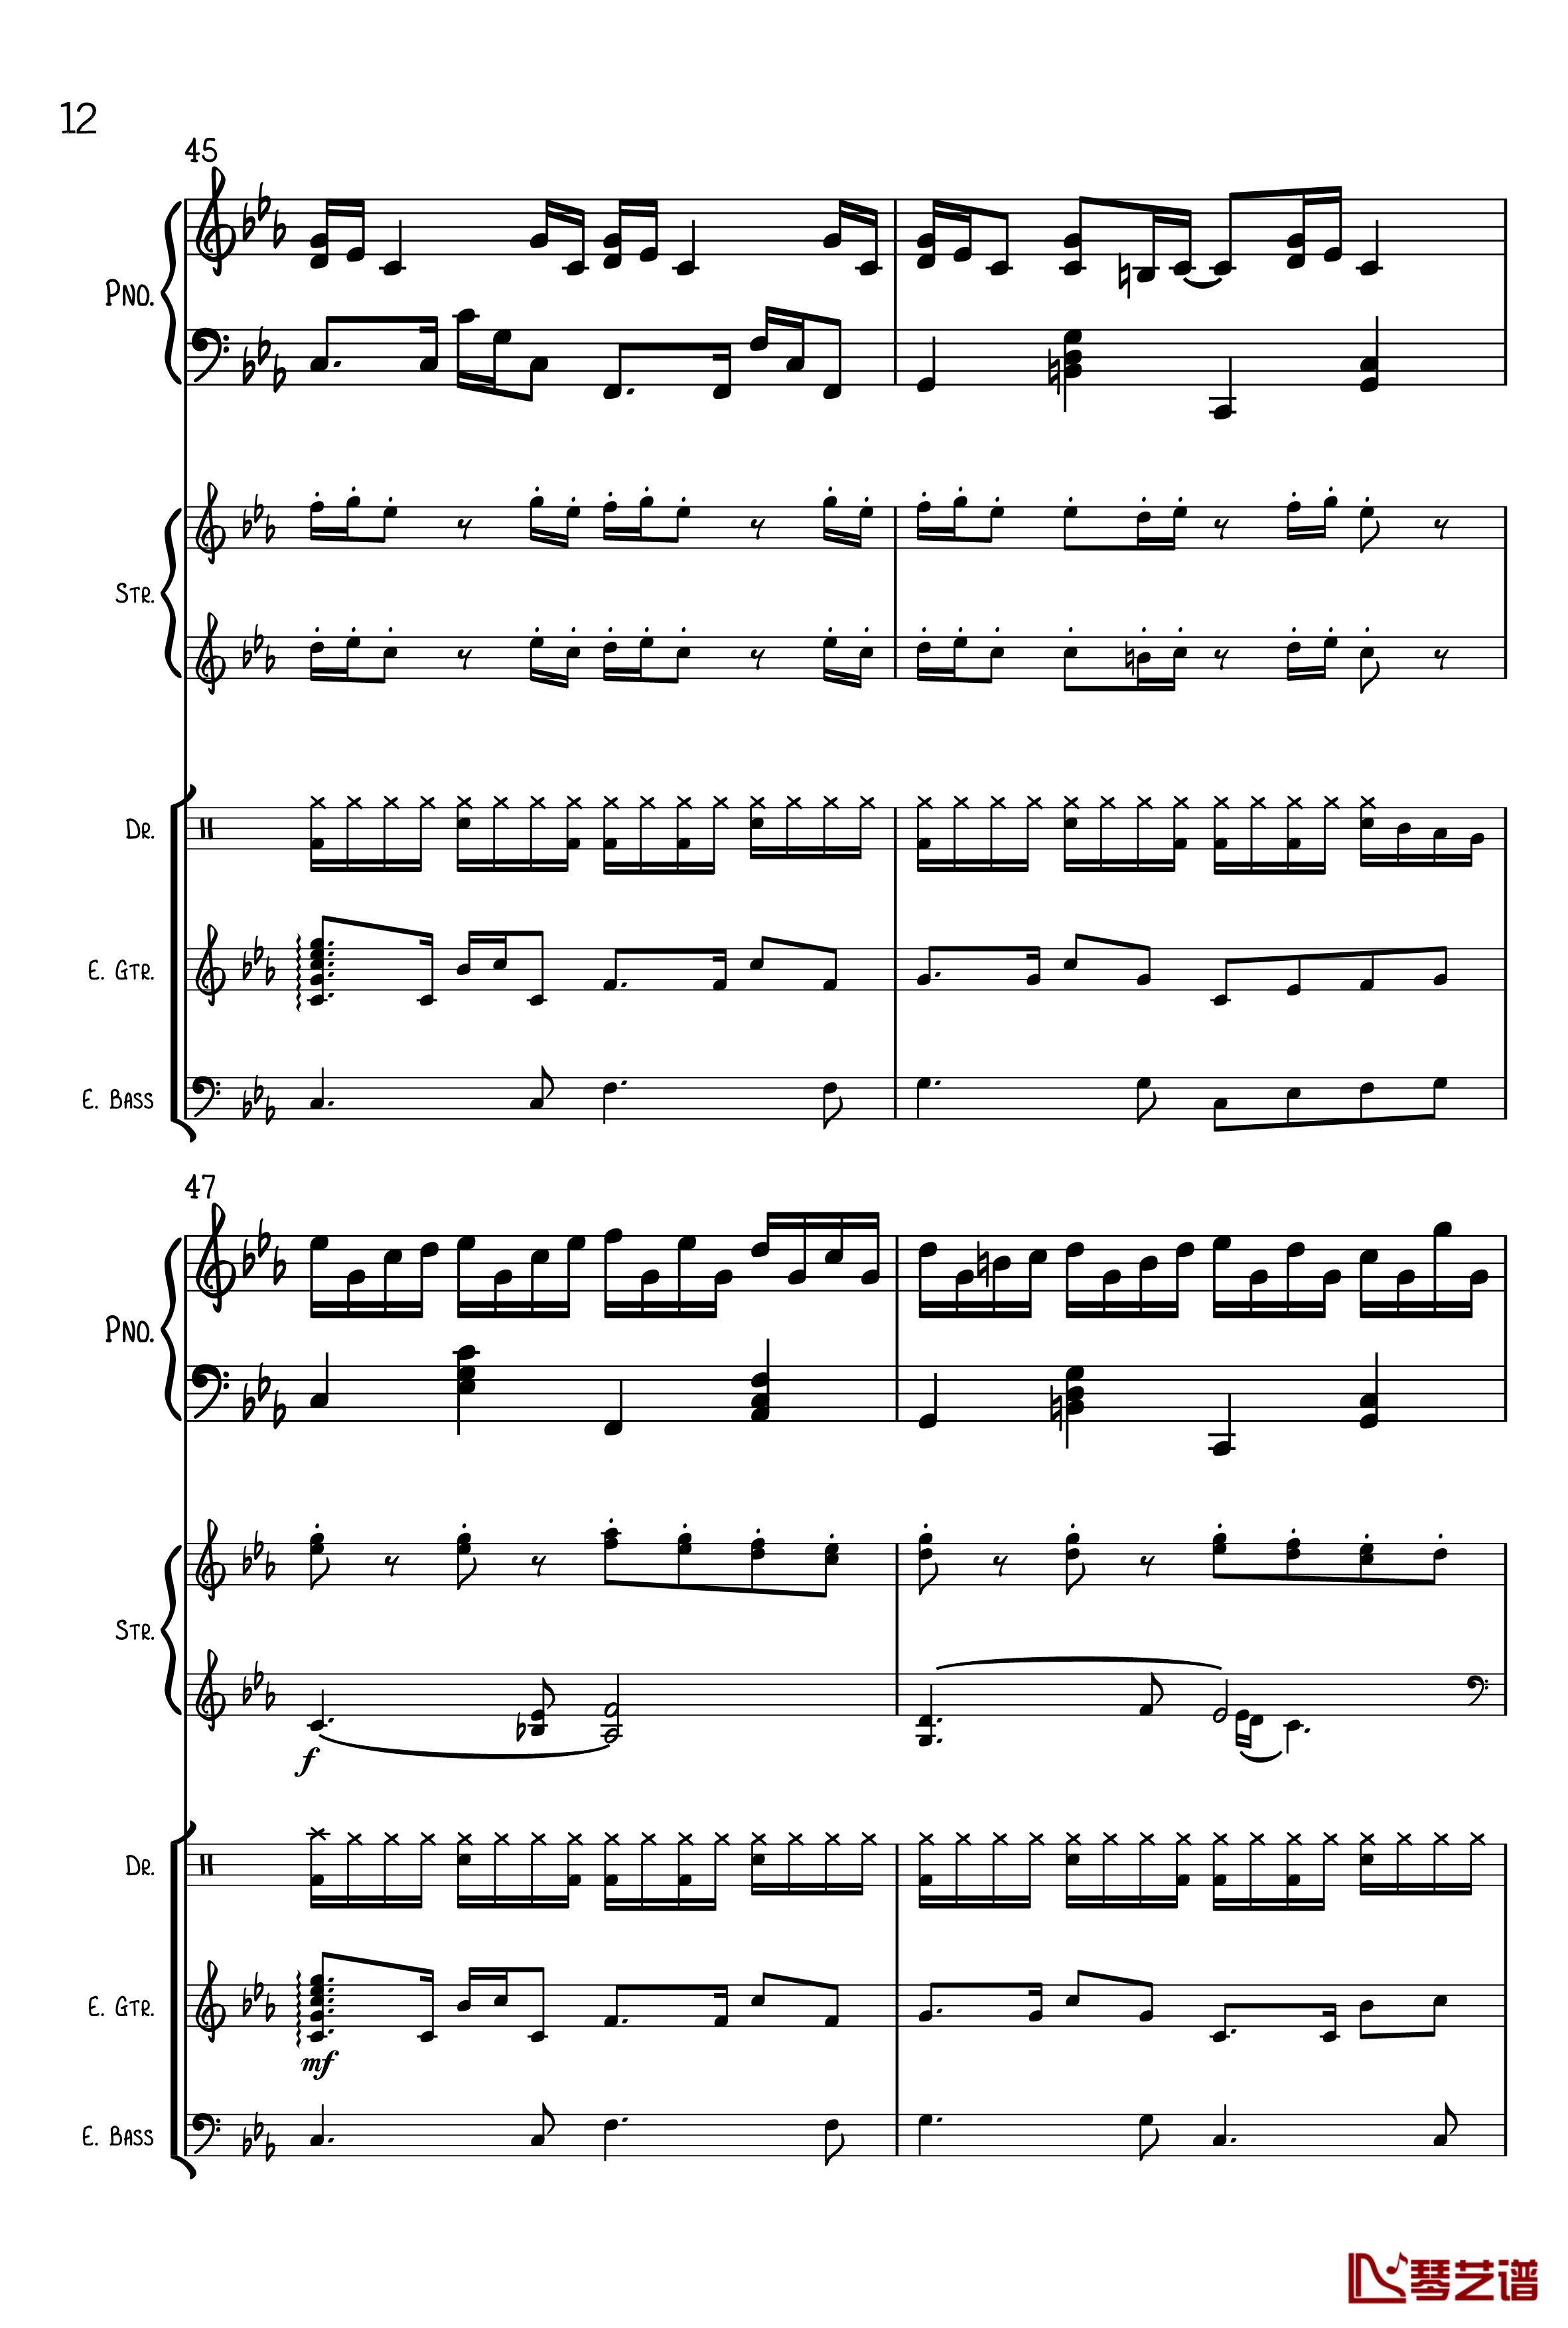 克罗地亚狂想曲钢琴谱-总谱-马克西姆-Maksim·Mrvica12